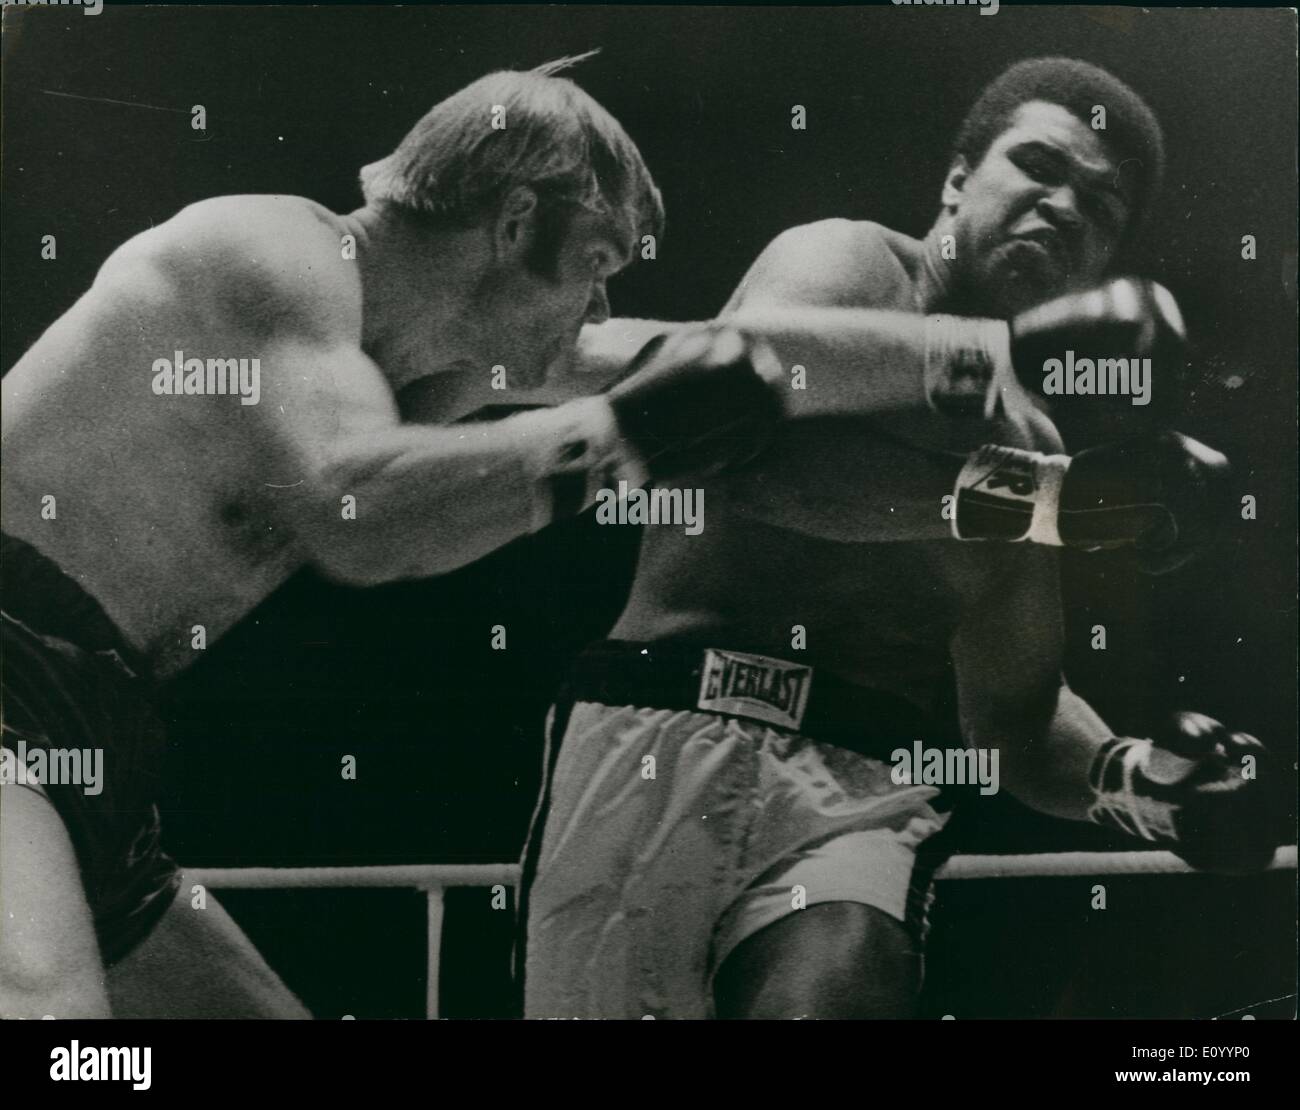 Il 12 Dic. 1971 - Muhammad Ali batte Jurgen Blin: Muhammad Ali ha messo k.o. Jurgen Blin della Germania Ovest nel settimo round, a Zurigo la domenica notte. Mostra fotografica di Muhammad Ali, evita la necessità di una sinistra da Jurgen Blin, durante la loro lotta a Zurigo. Foto Stock